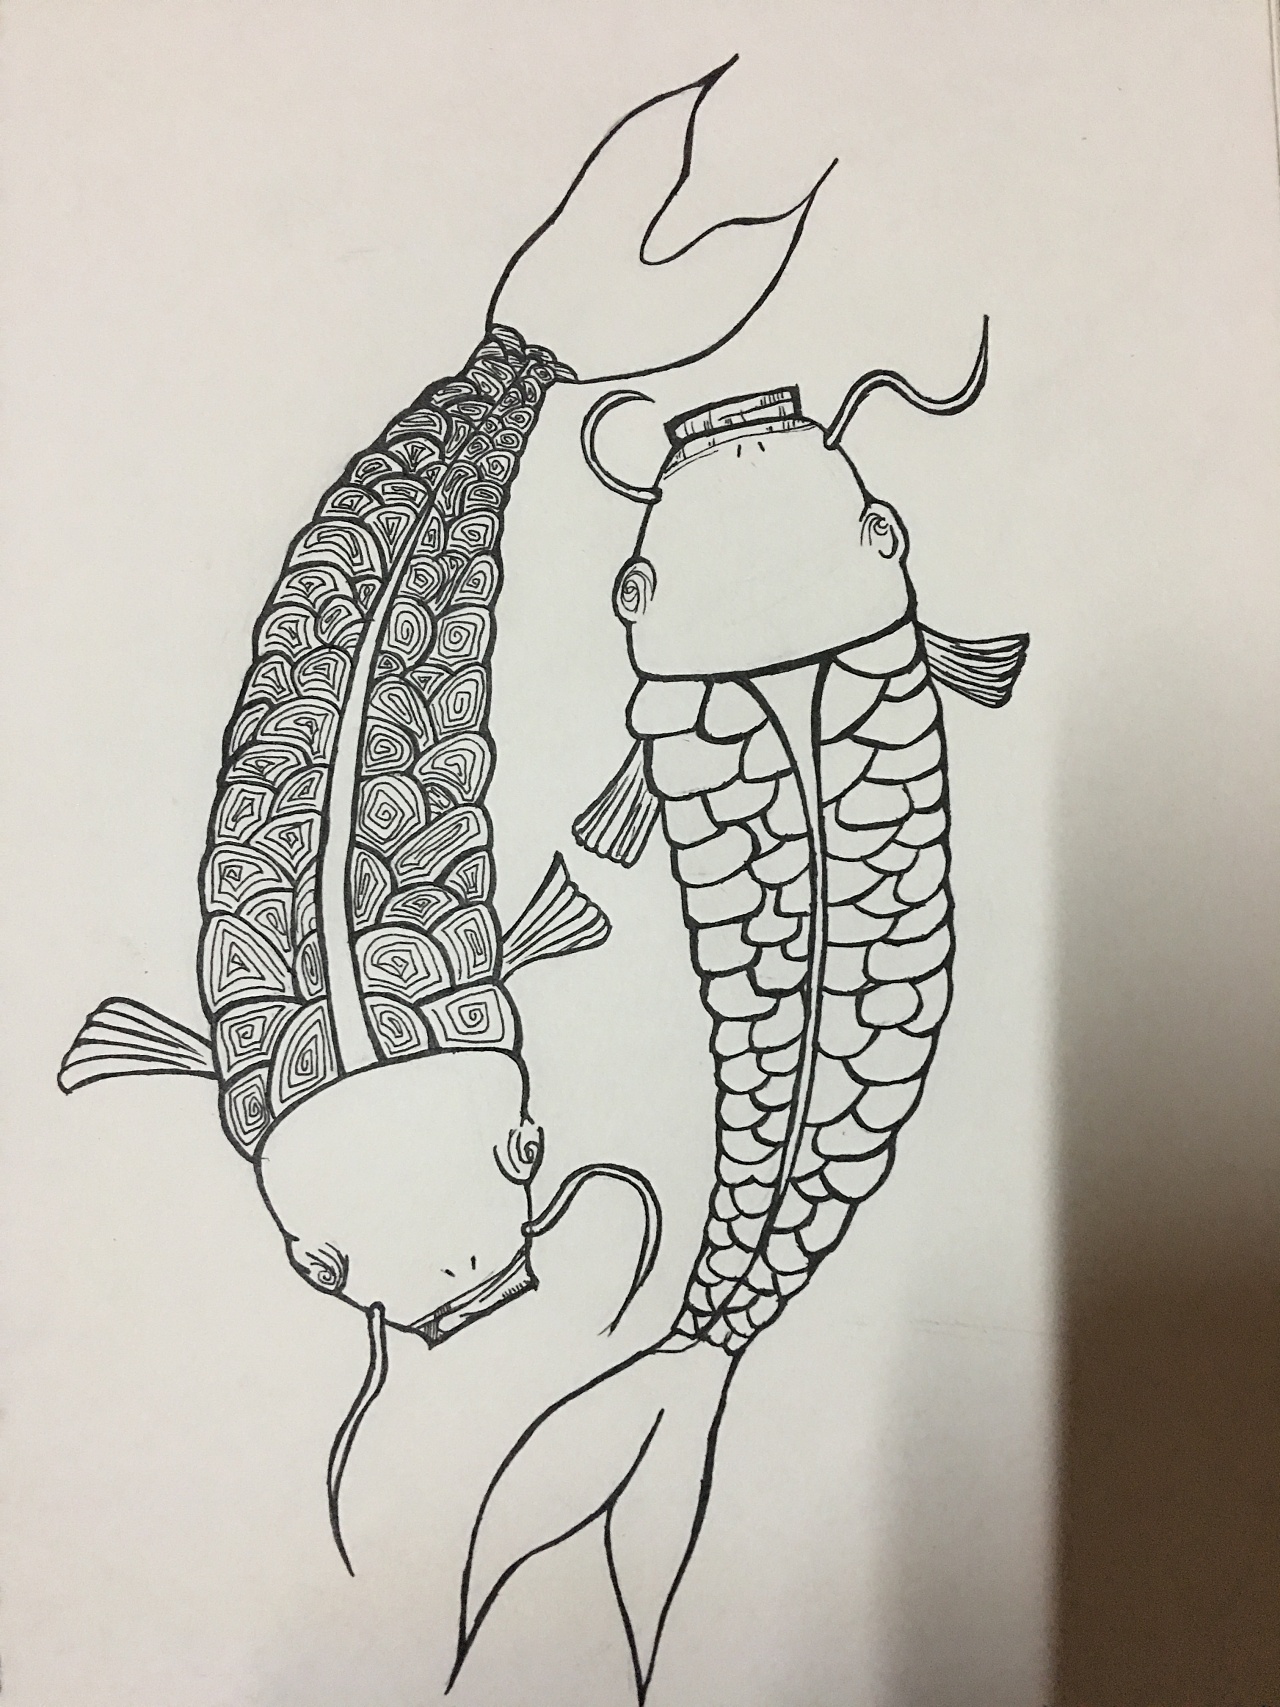 小臂形态饱满的传统鲤鱼枫叶纹身图案_南京纹彩刺青